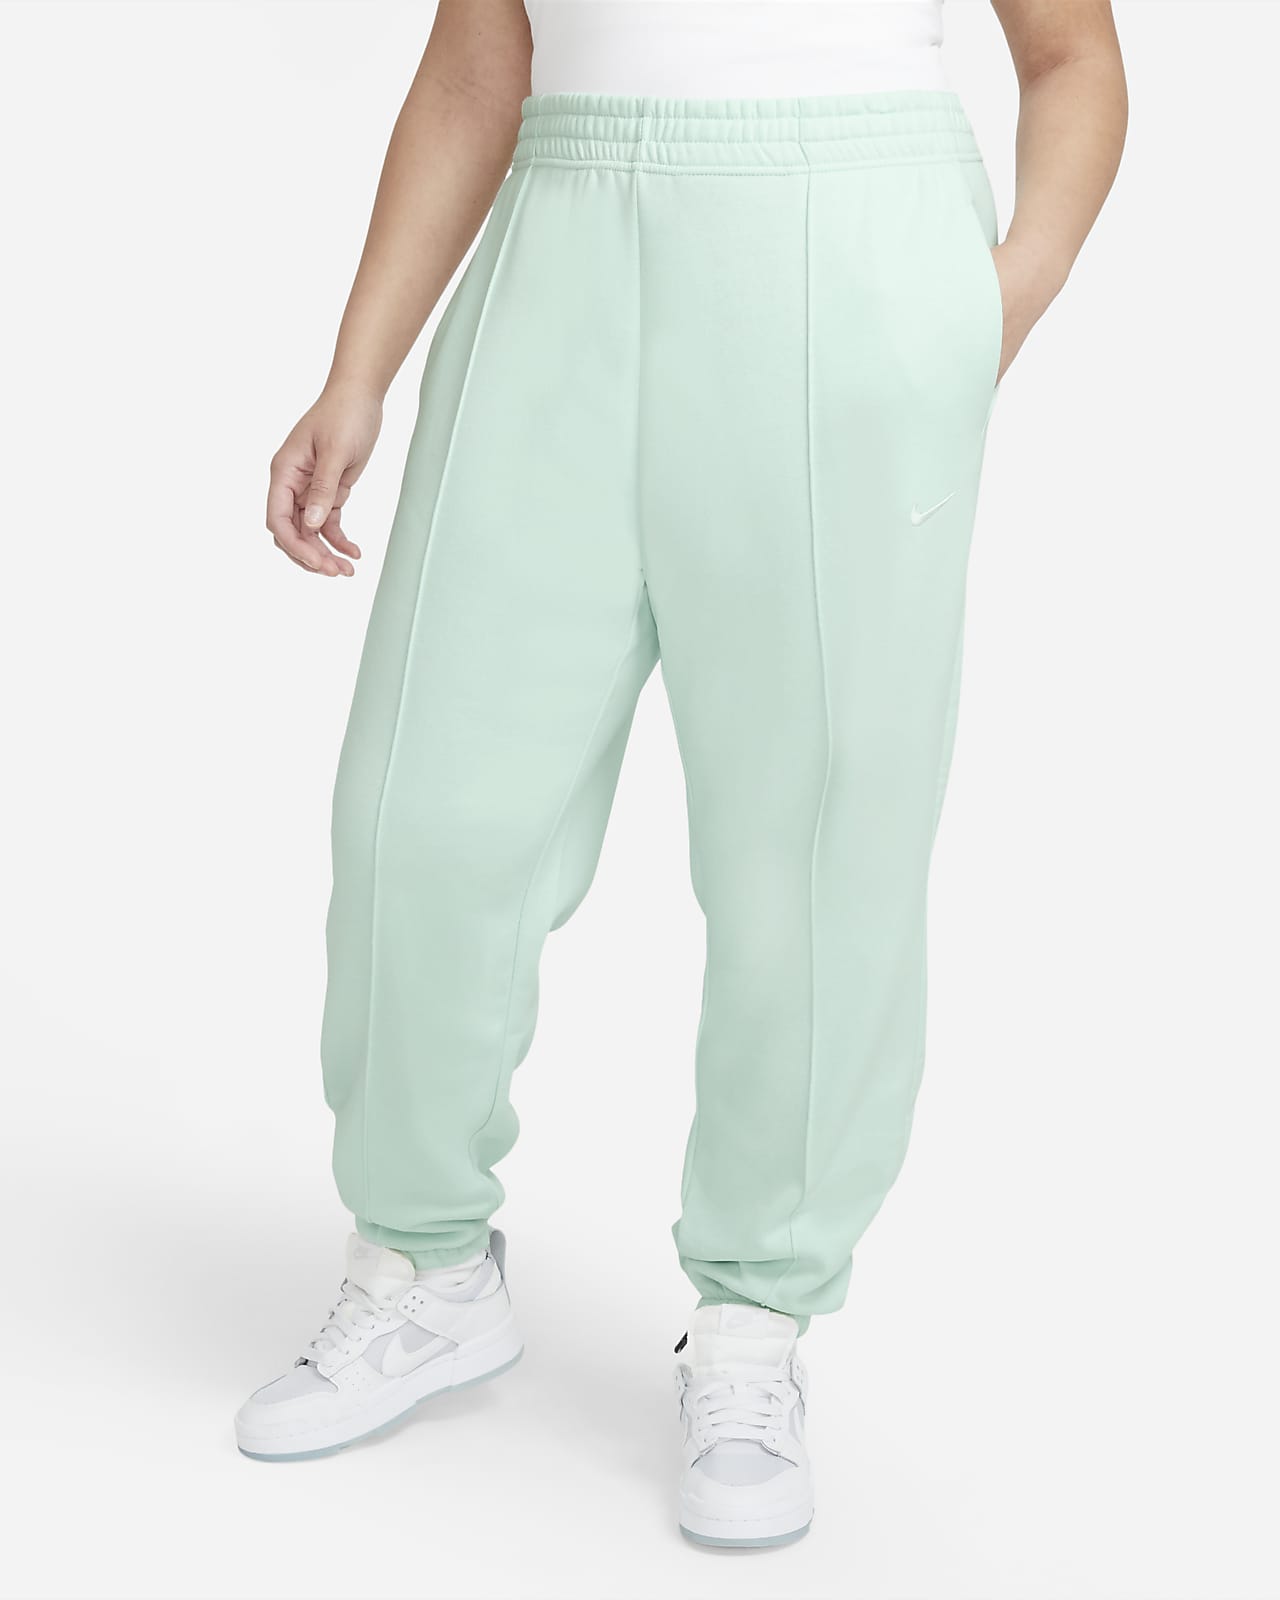 Dámské flísové kalhoty Nike Sportswear Trend (větší velikost)